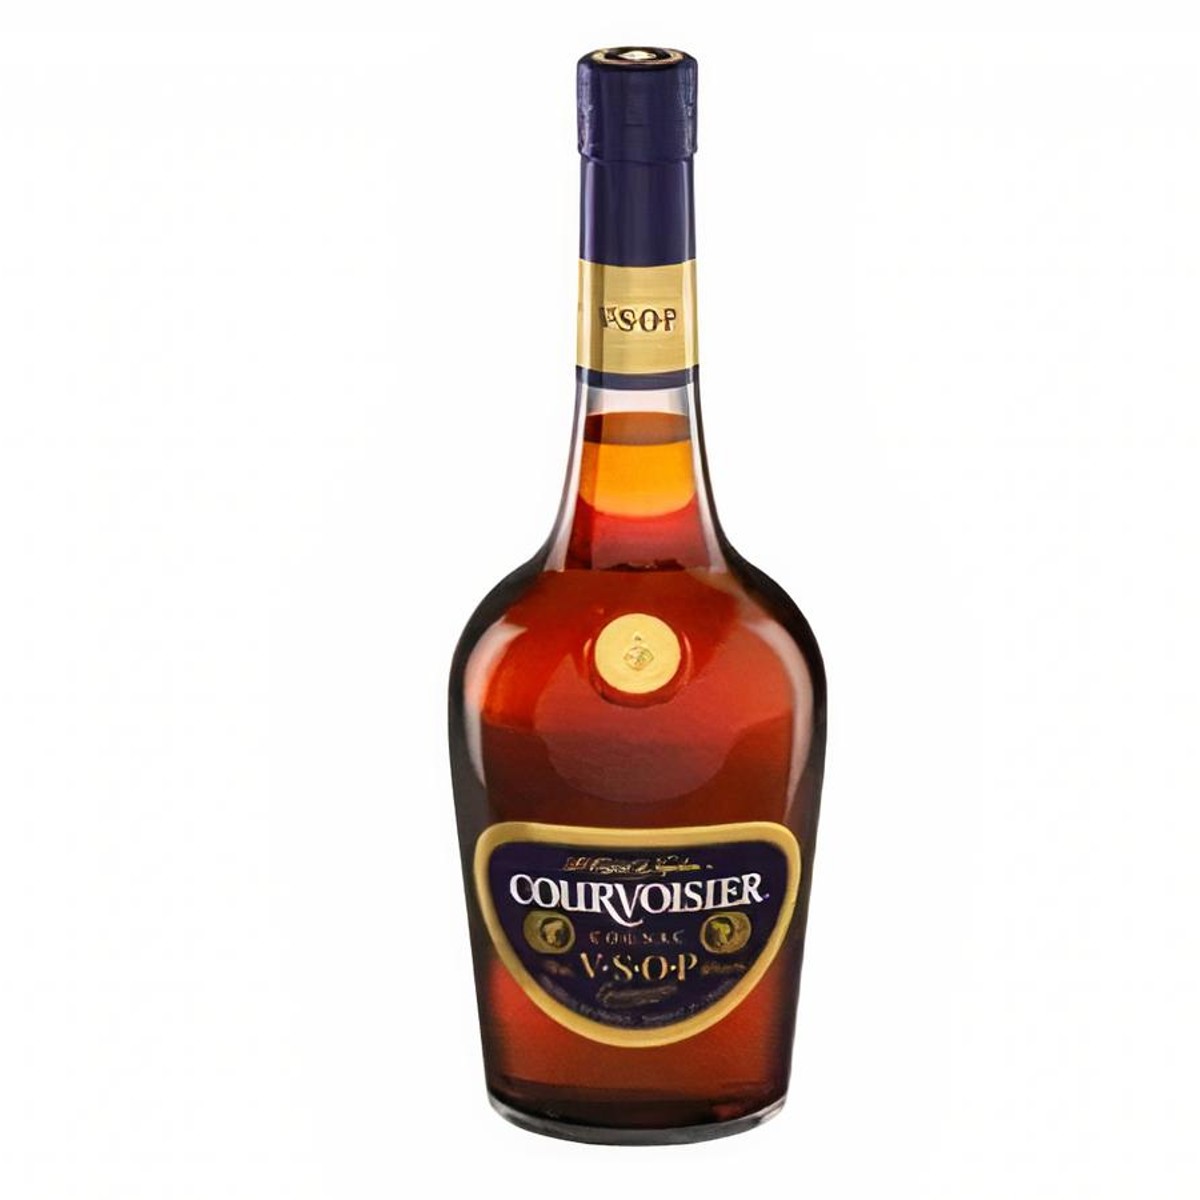 Hennessy VSOP Cognac Privilege France - Mount Carmel Wines